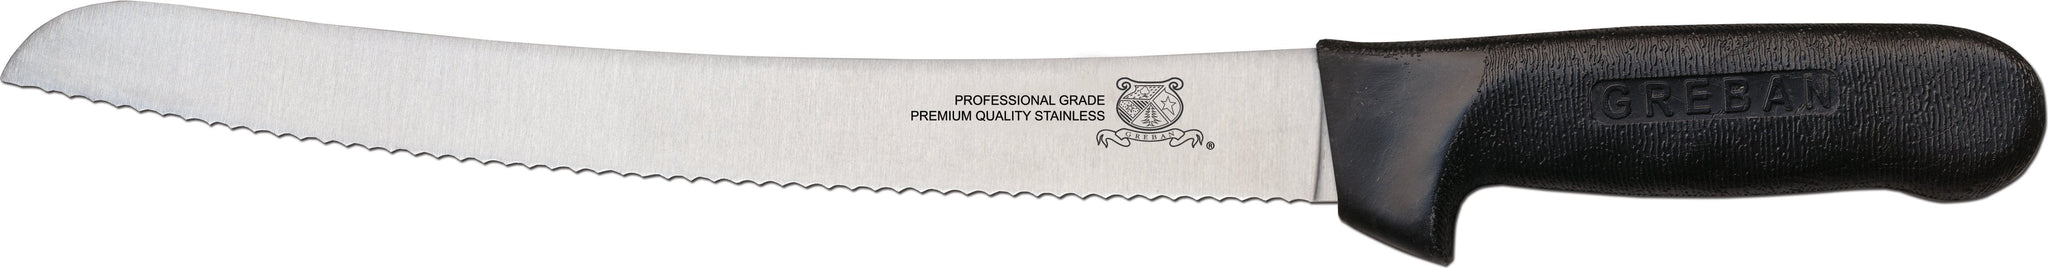 Omcan - 10” Curved Slicer Knife with Black Polypropylene Handle, 15/cs - 12821